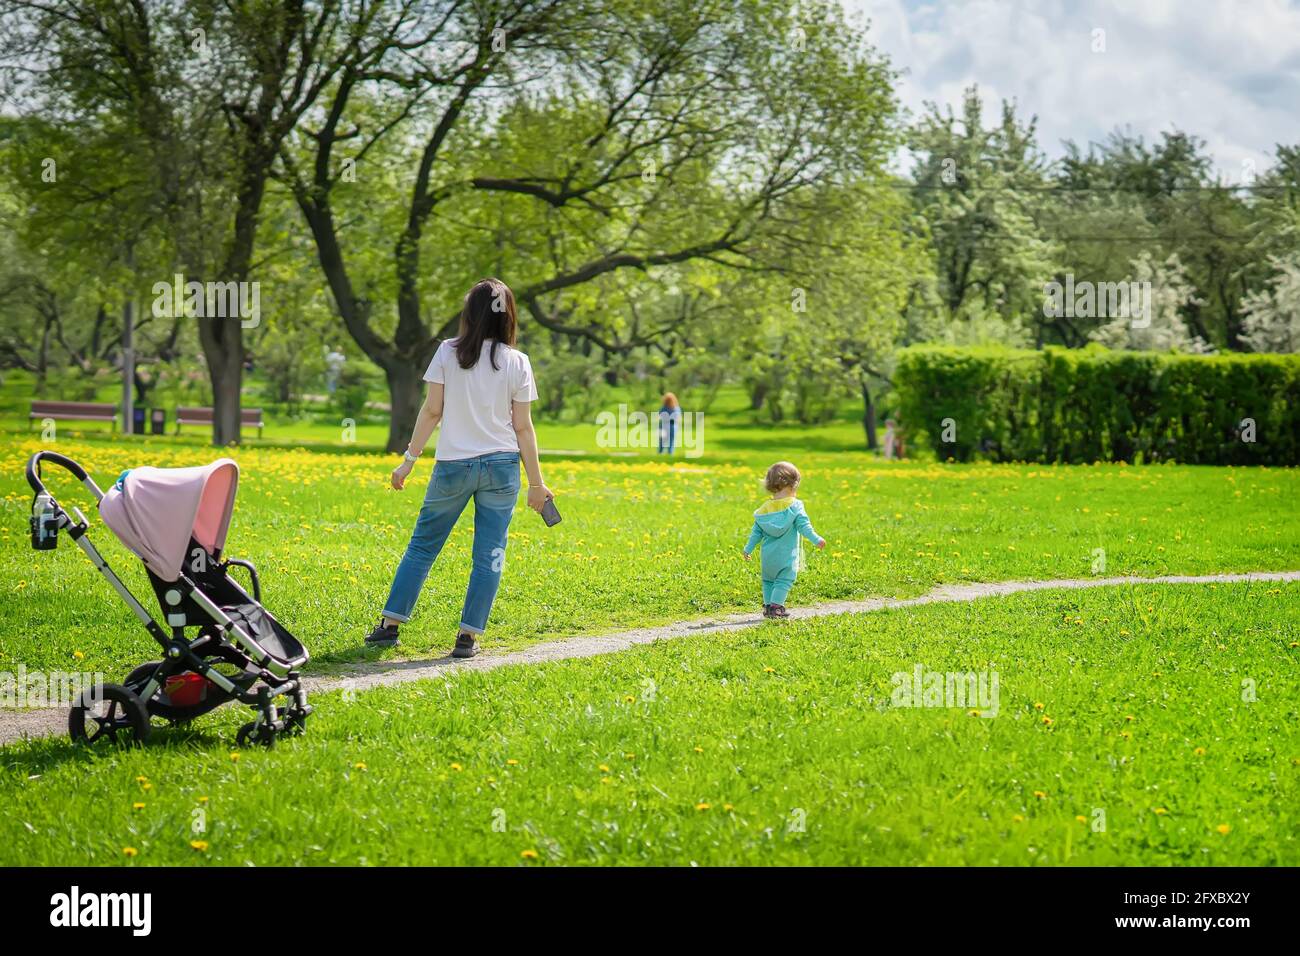 Junge Frau geht mit kleinem Baby im Park, helle Frühlingswiese mit Eselinnen, sonniger Tag Stockfoto